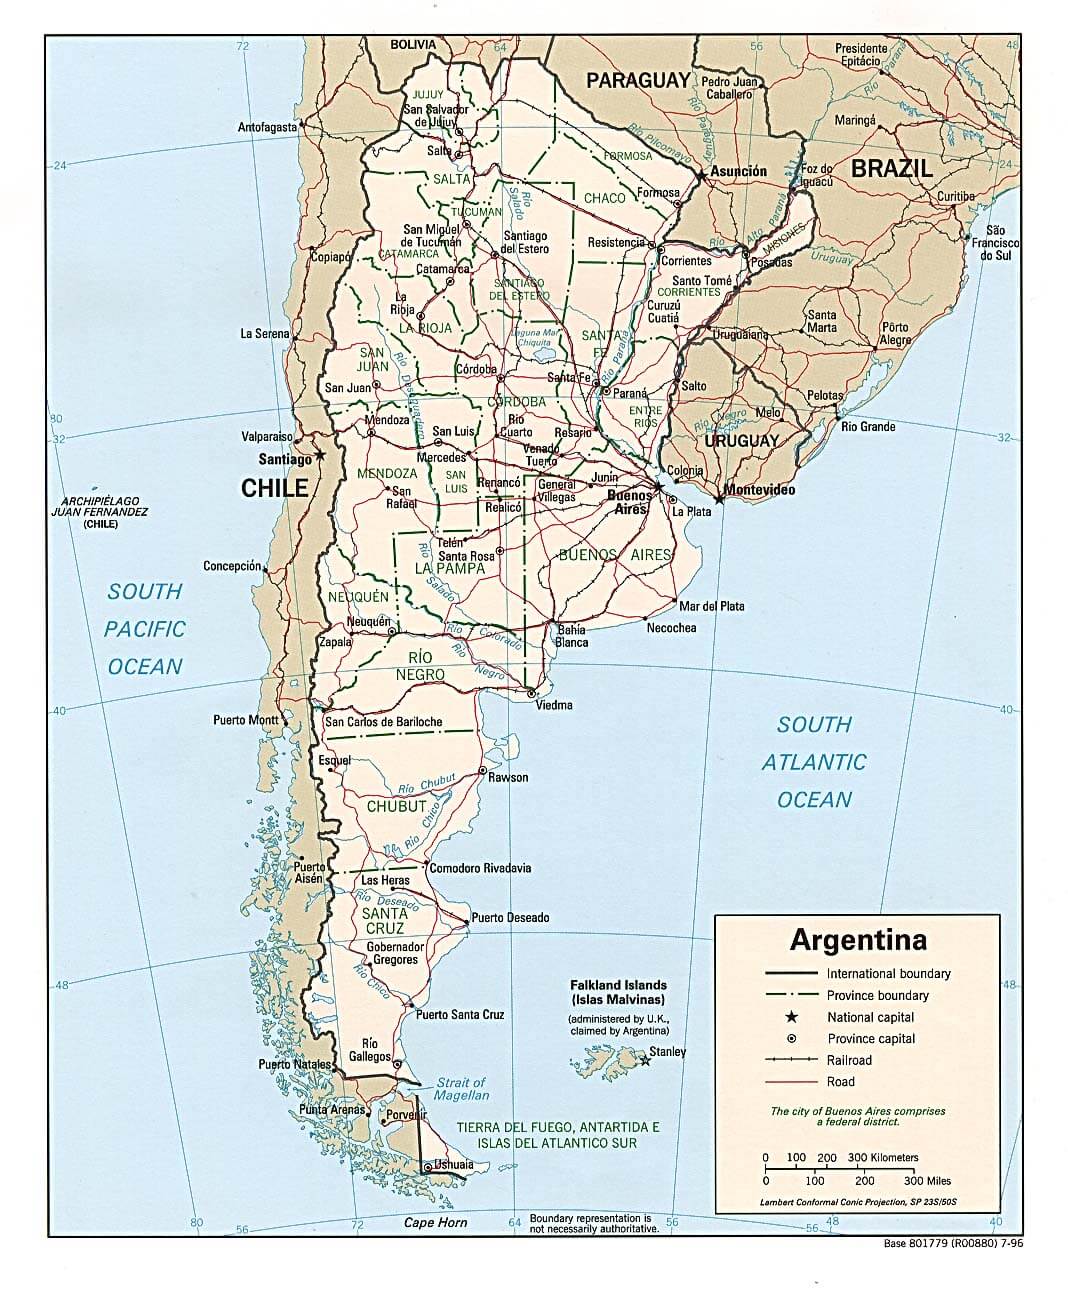 argentinien politisch karte 1996